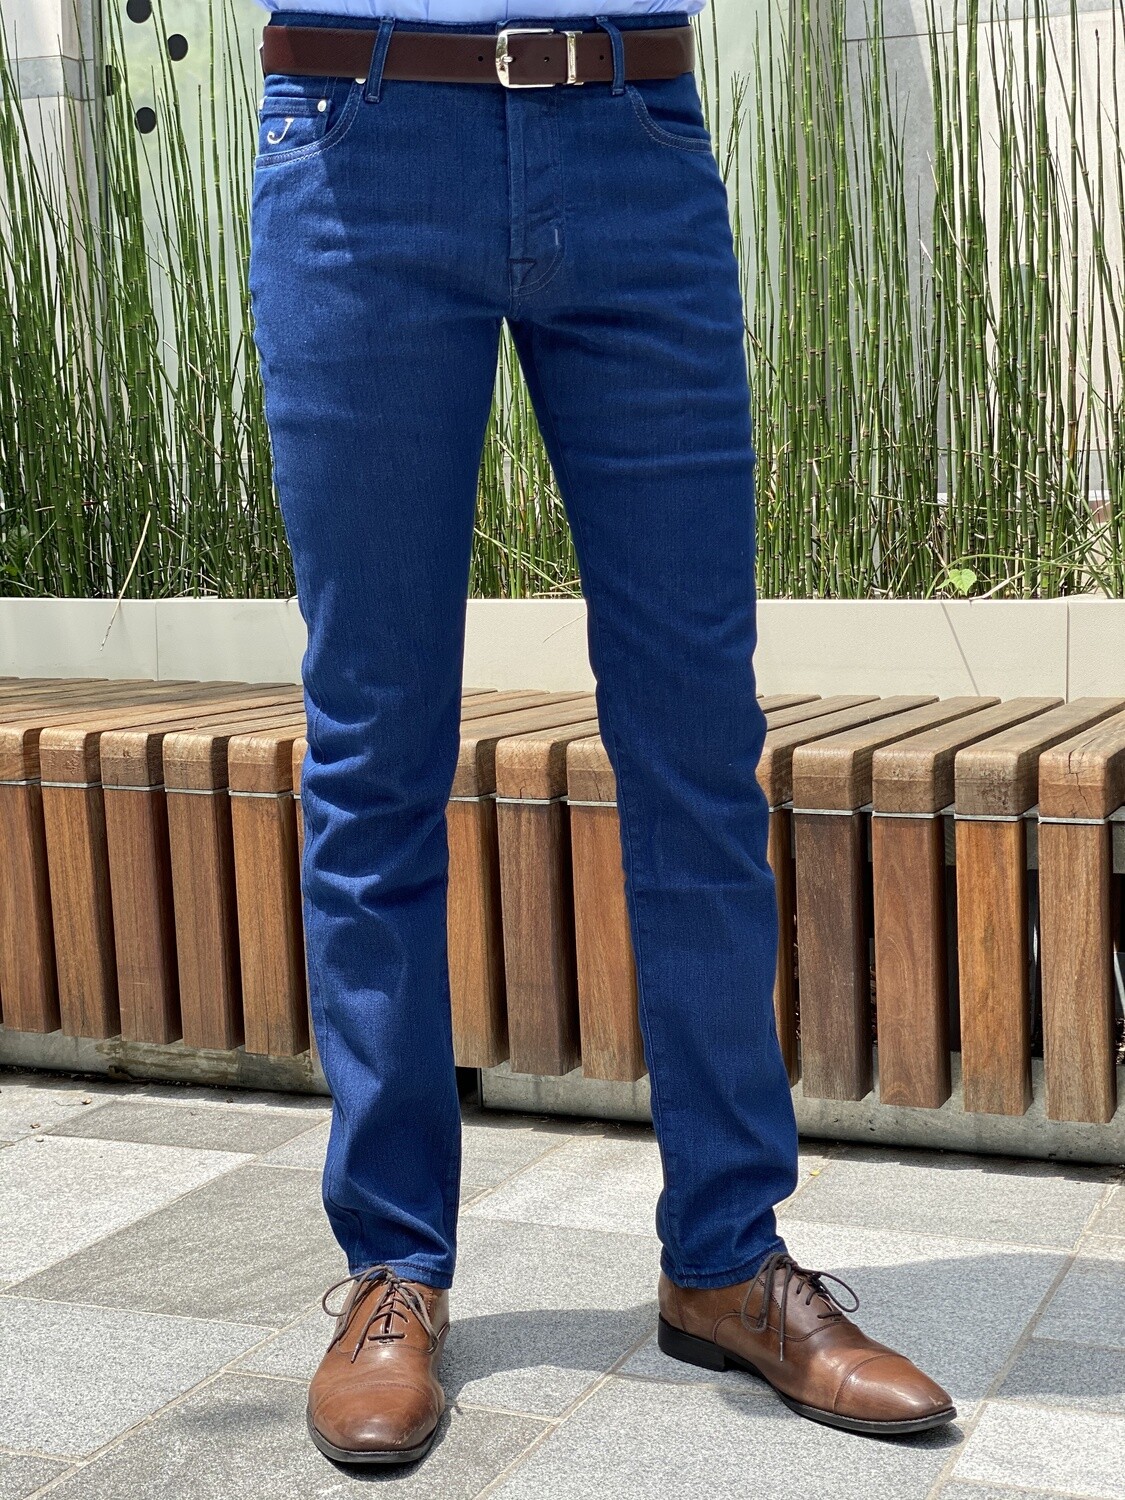 Jacob Cohen Comfort Fit Luxury Stretch Denim Jeans - Blue